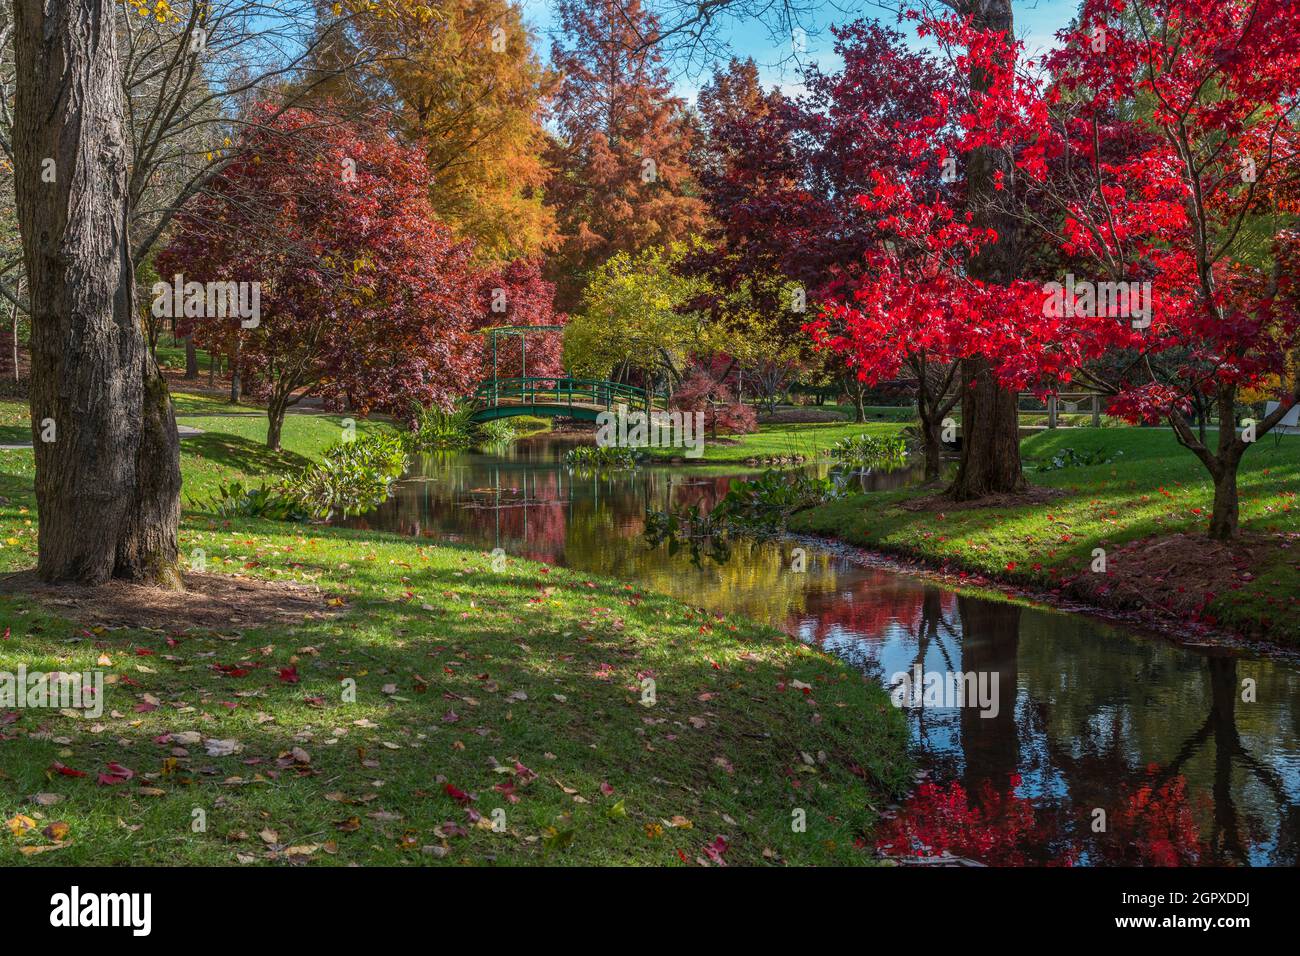 Ambiente pittoresco del giardino d'acqua con piante acquatiche e riflessi dei colori vivaci e luminosi degli alberi nel laghetto con la piccola bridg Foto Stock